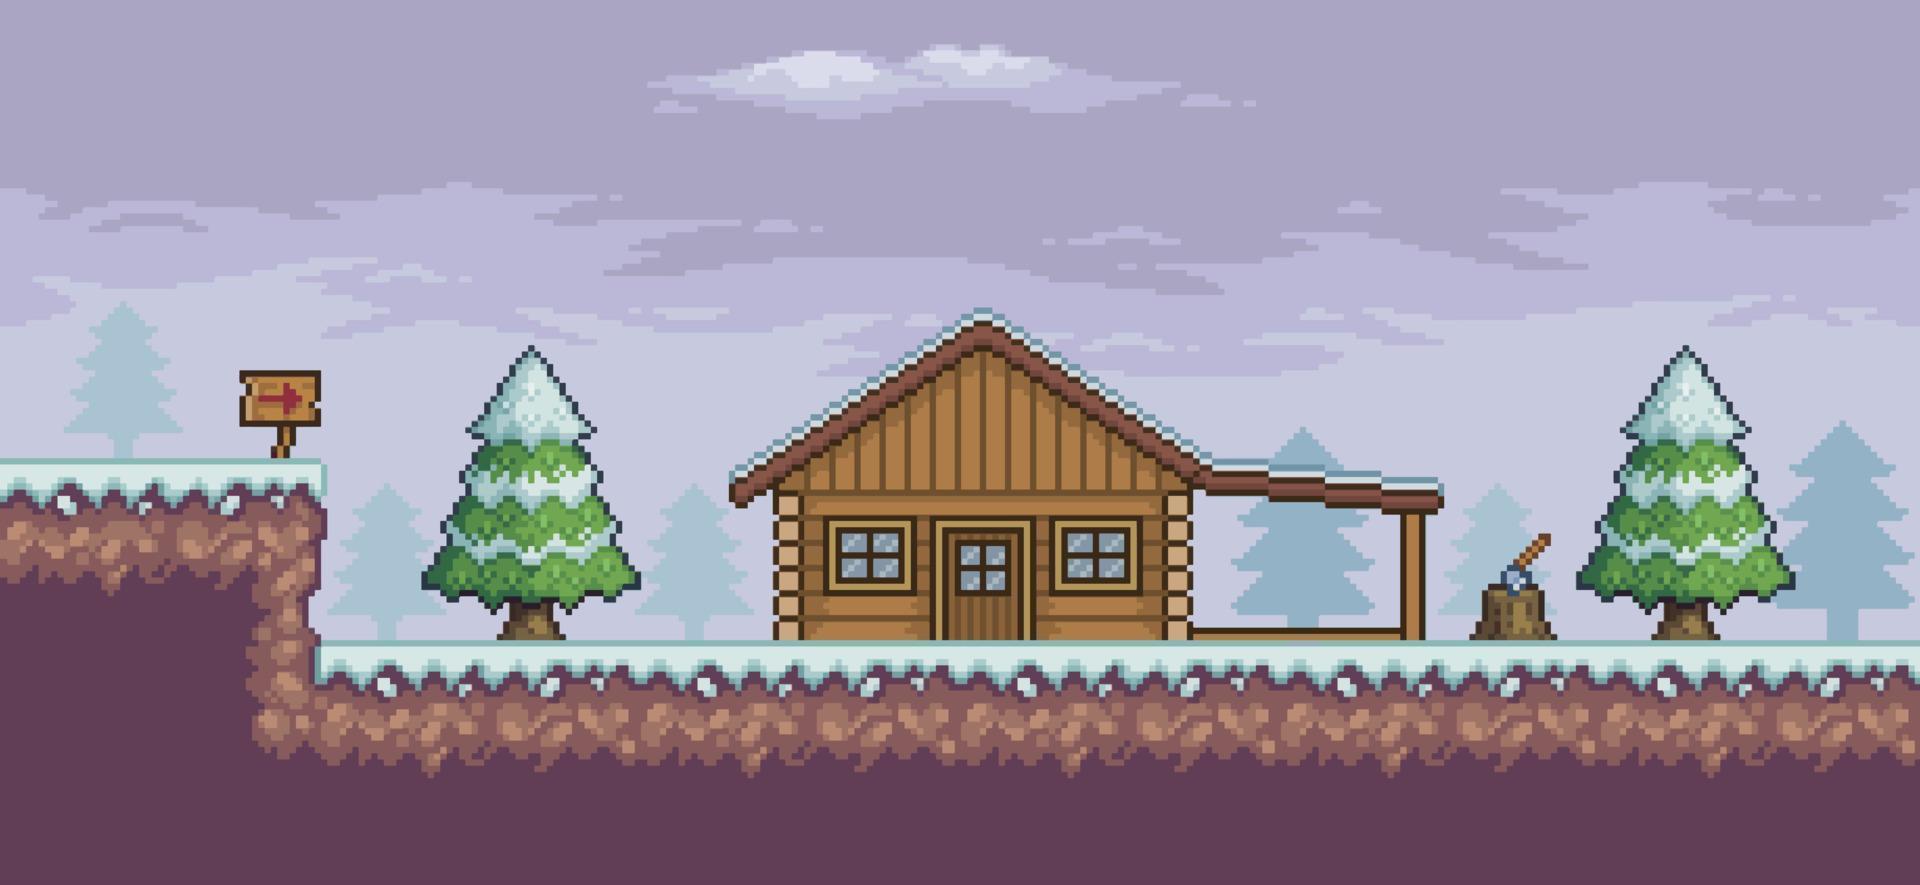 scène de jeu pixel art dans les pins enneigés, maison en bois, arrière-plan indicatif 8 bits vecteur